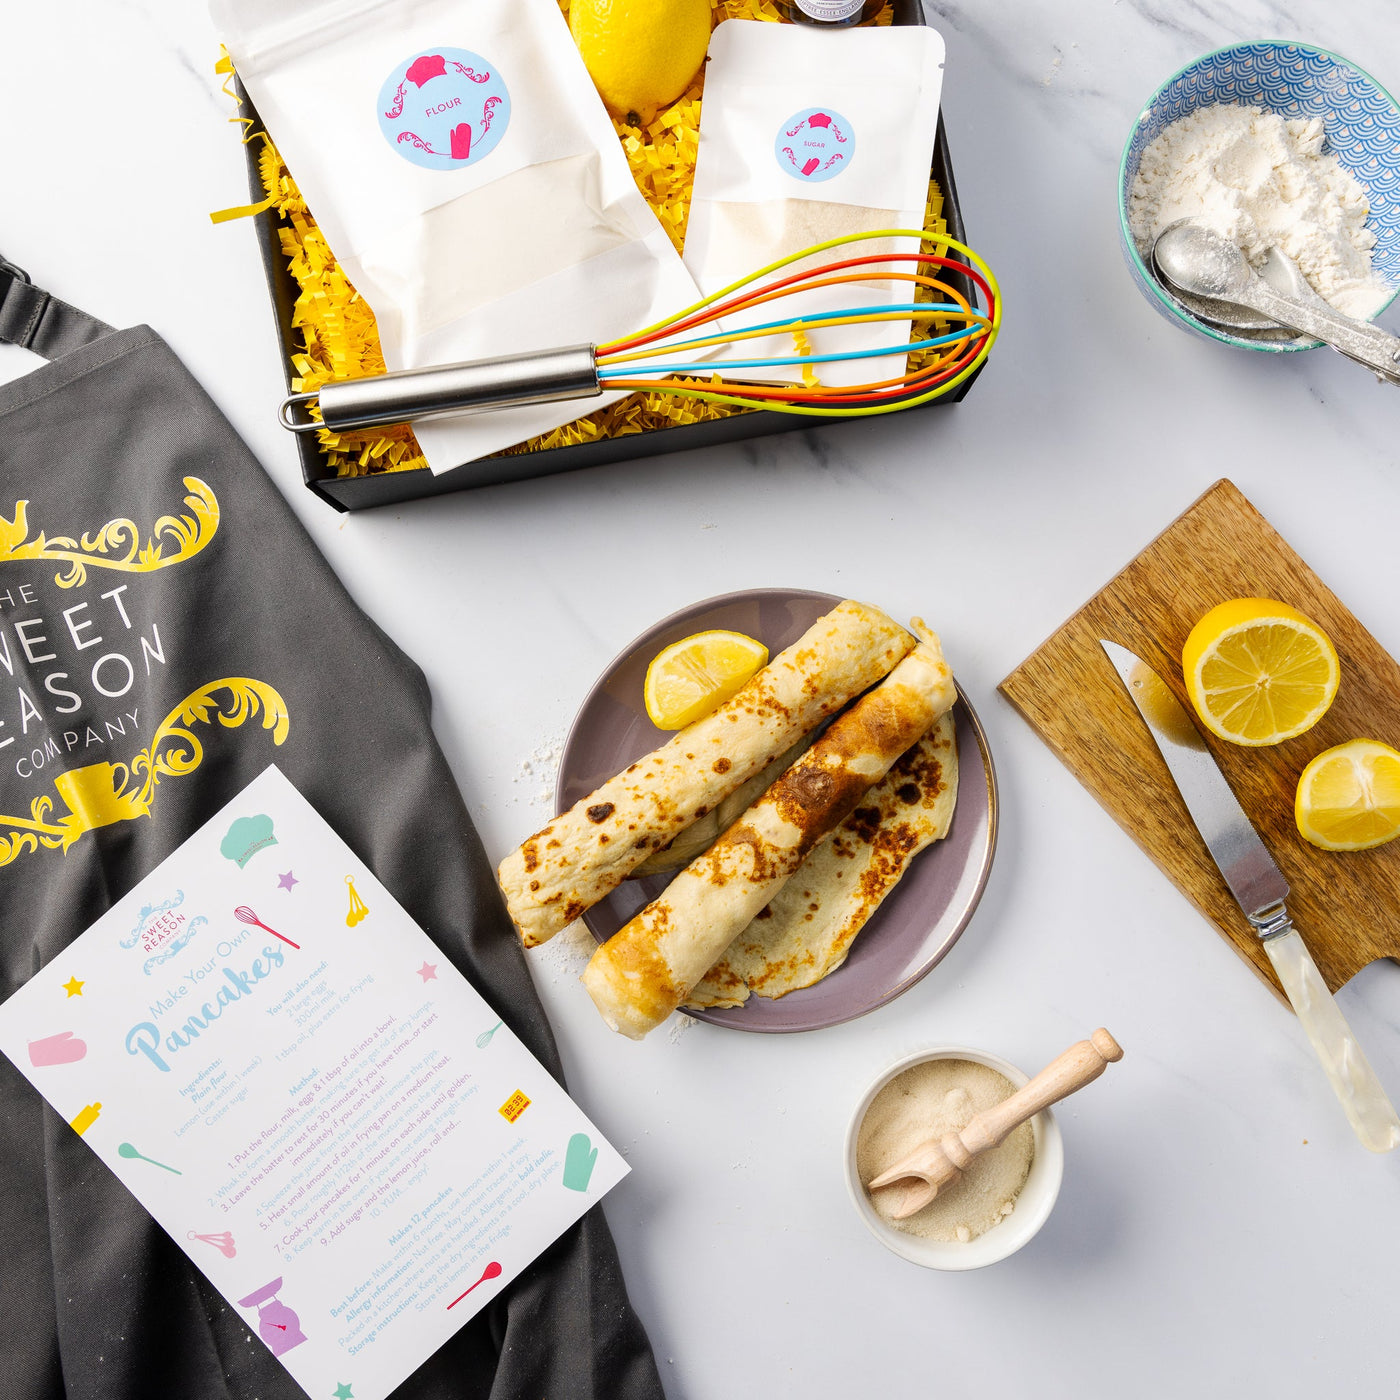 Pancake Day Kit: Make-You-Own Pancakes and Whisk Gift Set